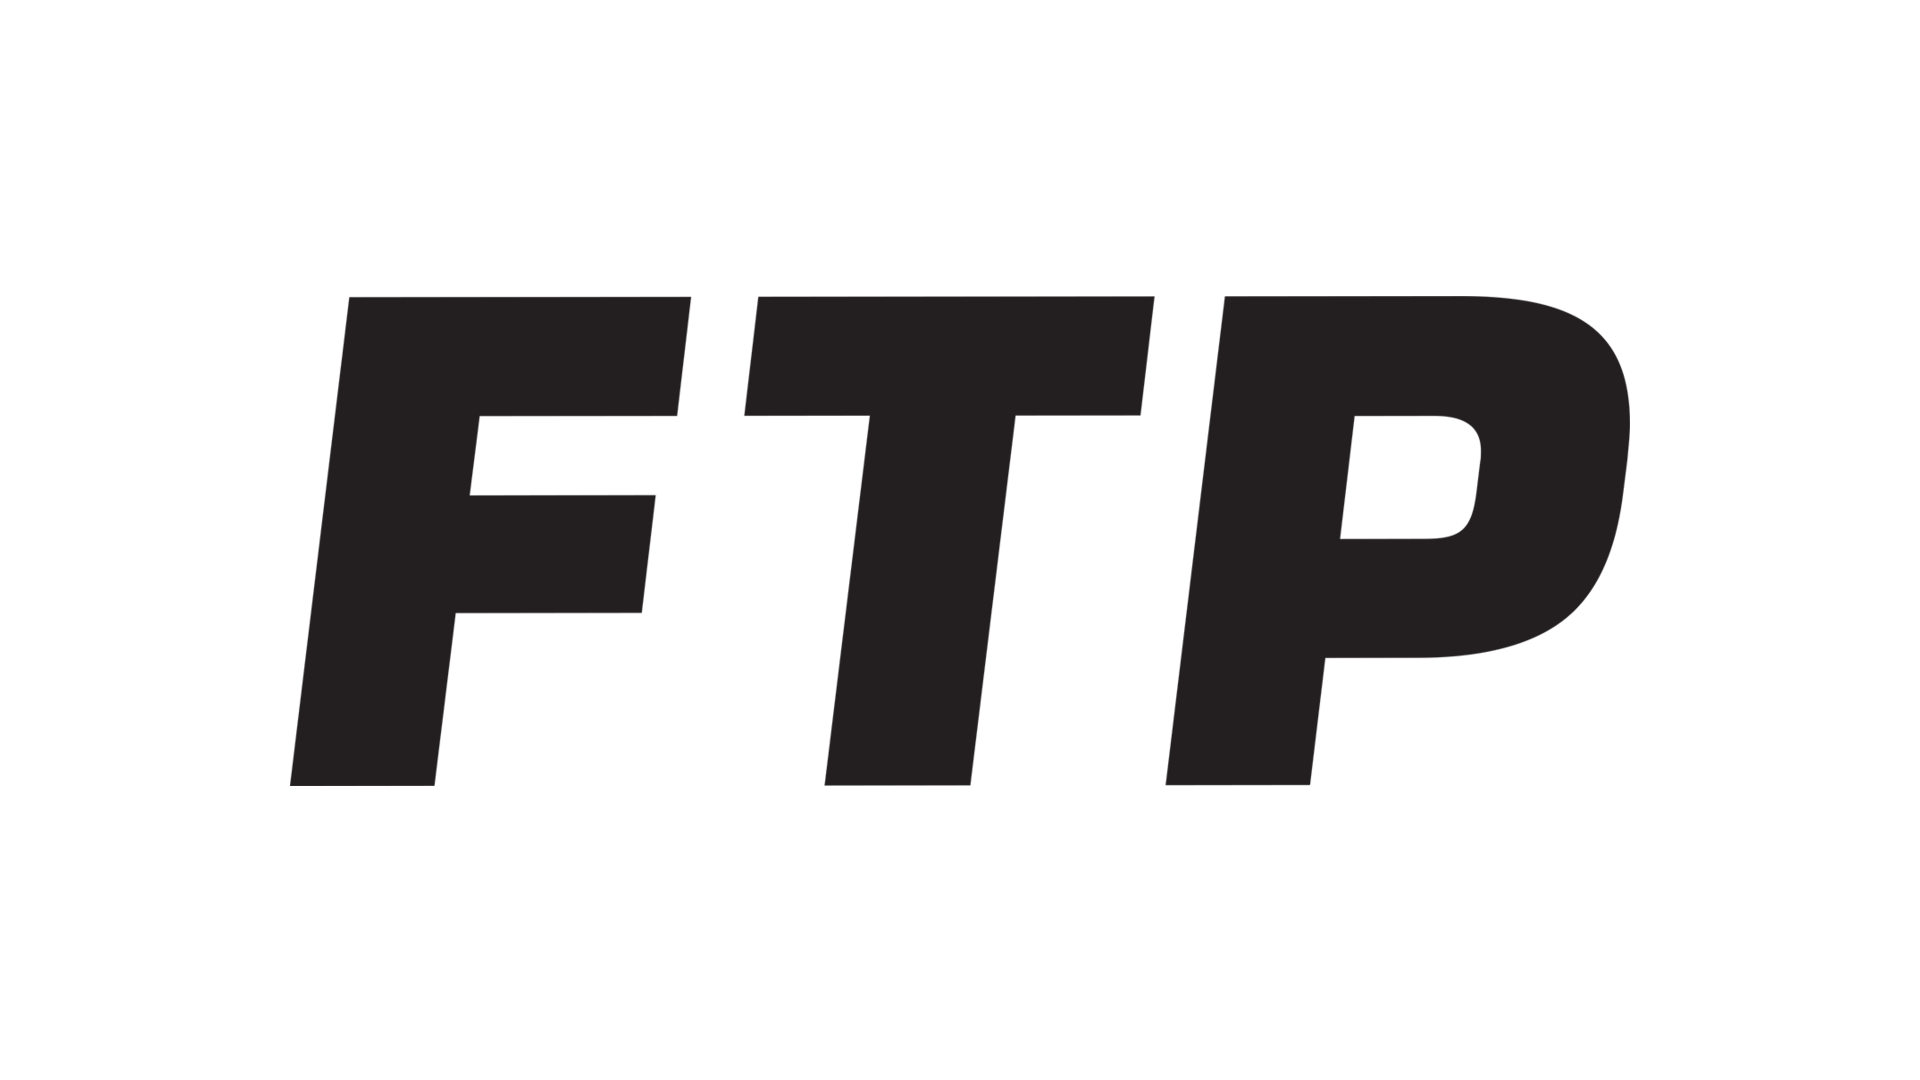 Ftp HD wallpapers  Pxfuel